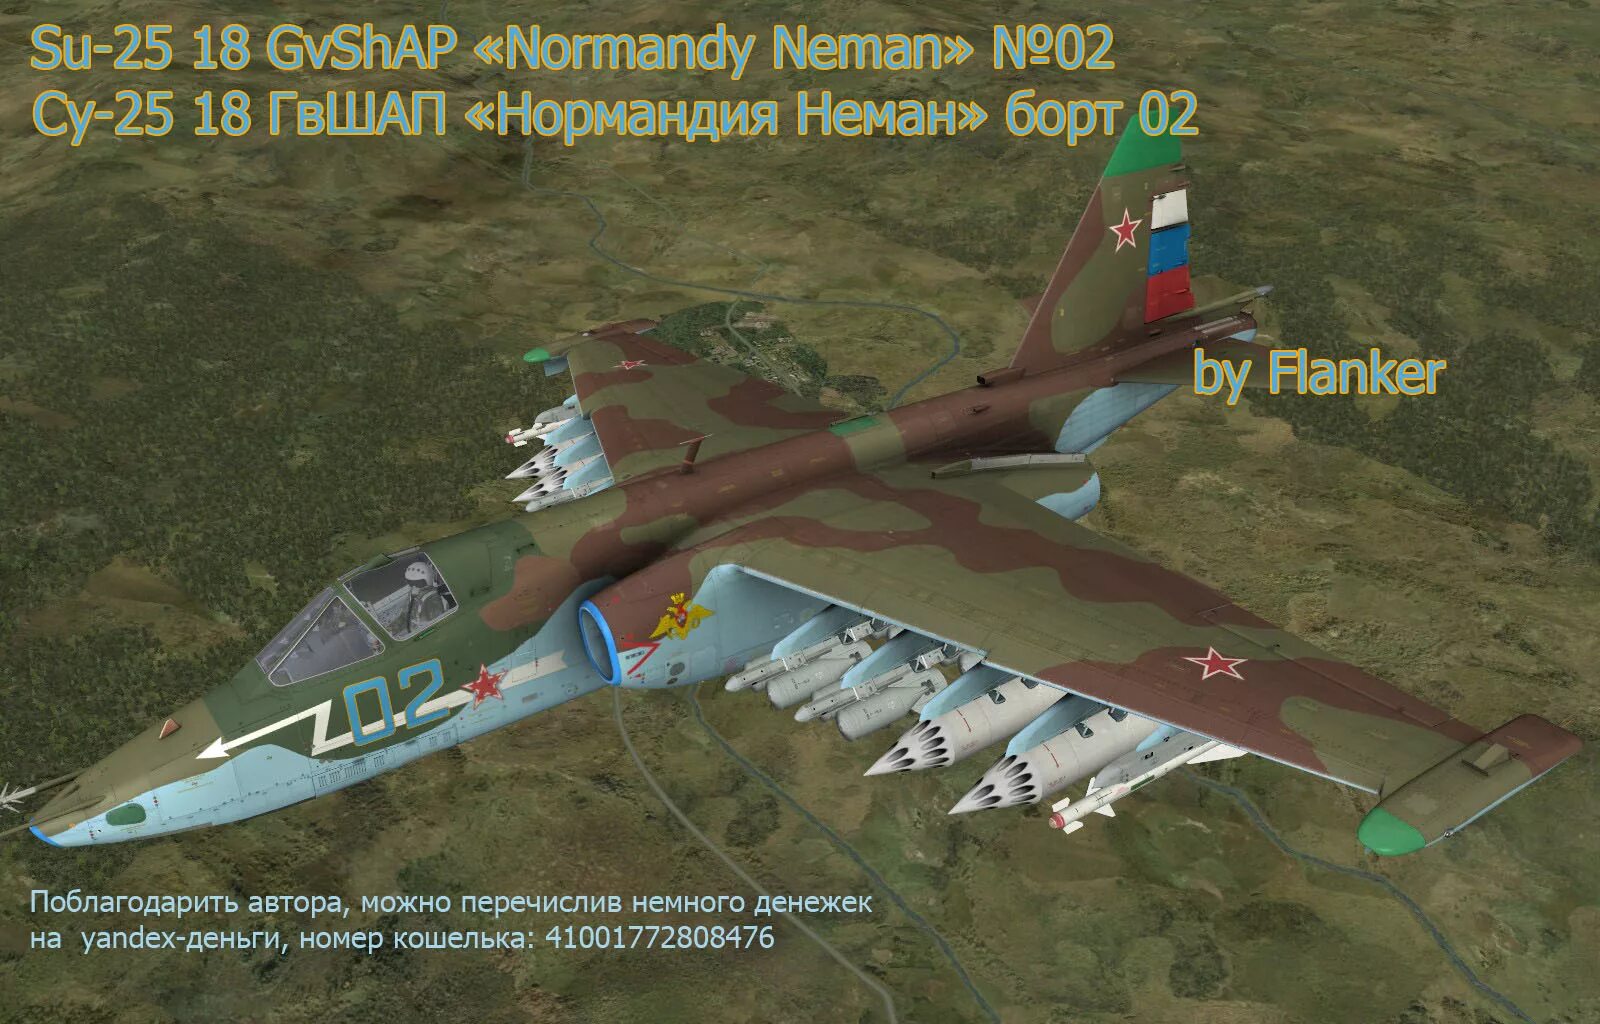 Нормандия неман 2. Су-25 Нормандия Неман. DCS Су 25. Эскадрилья Нормандия Неман. Су-25 борт 02.